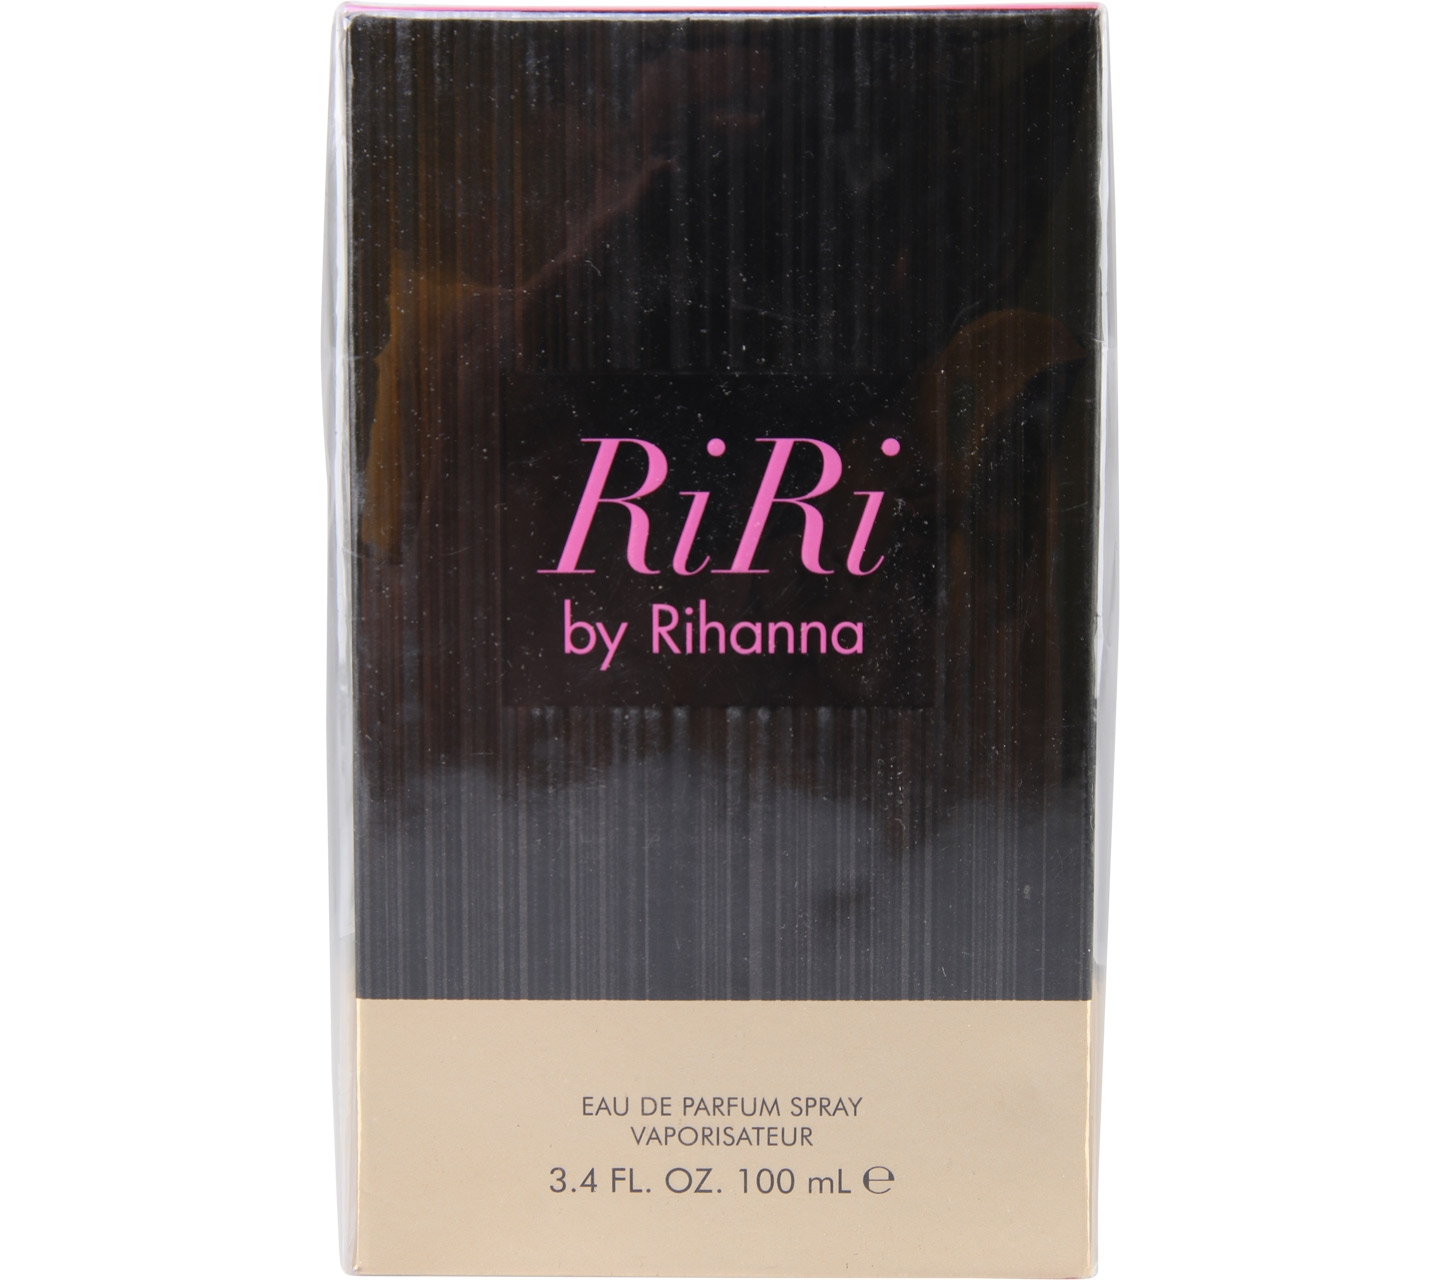 Riri By Rihanna Fragrance